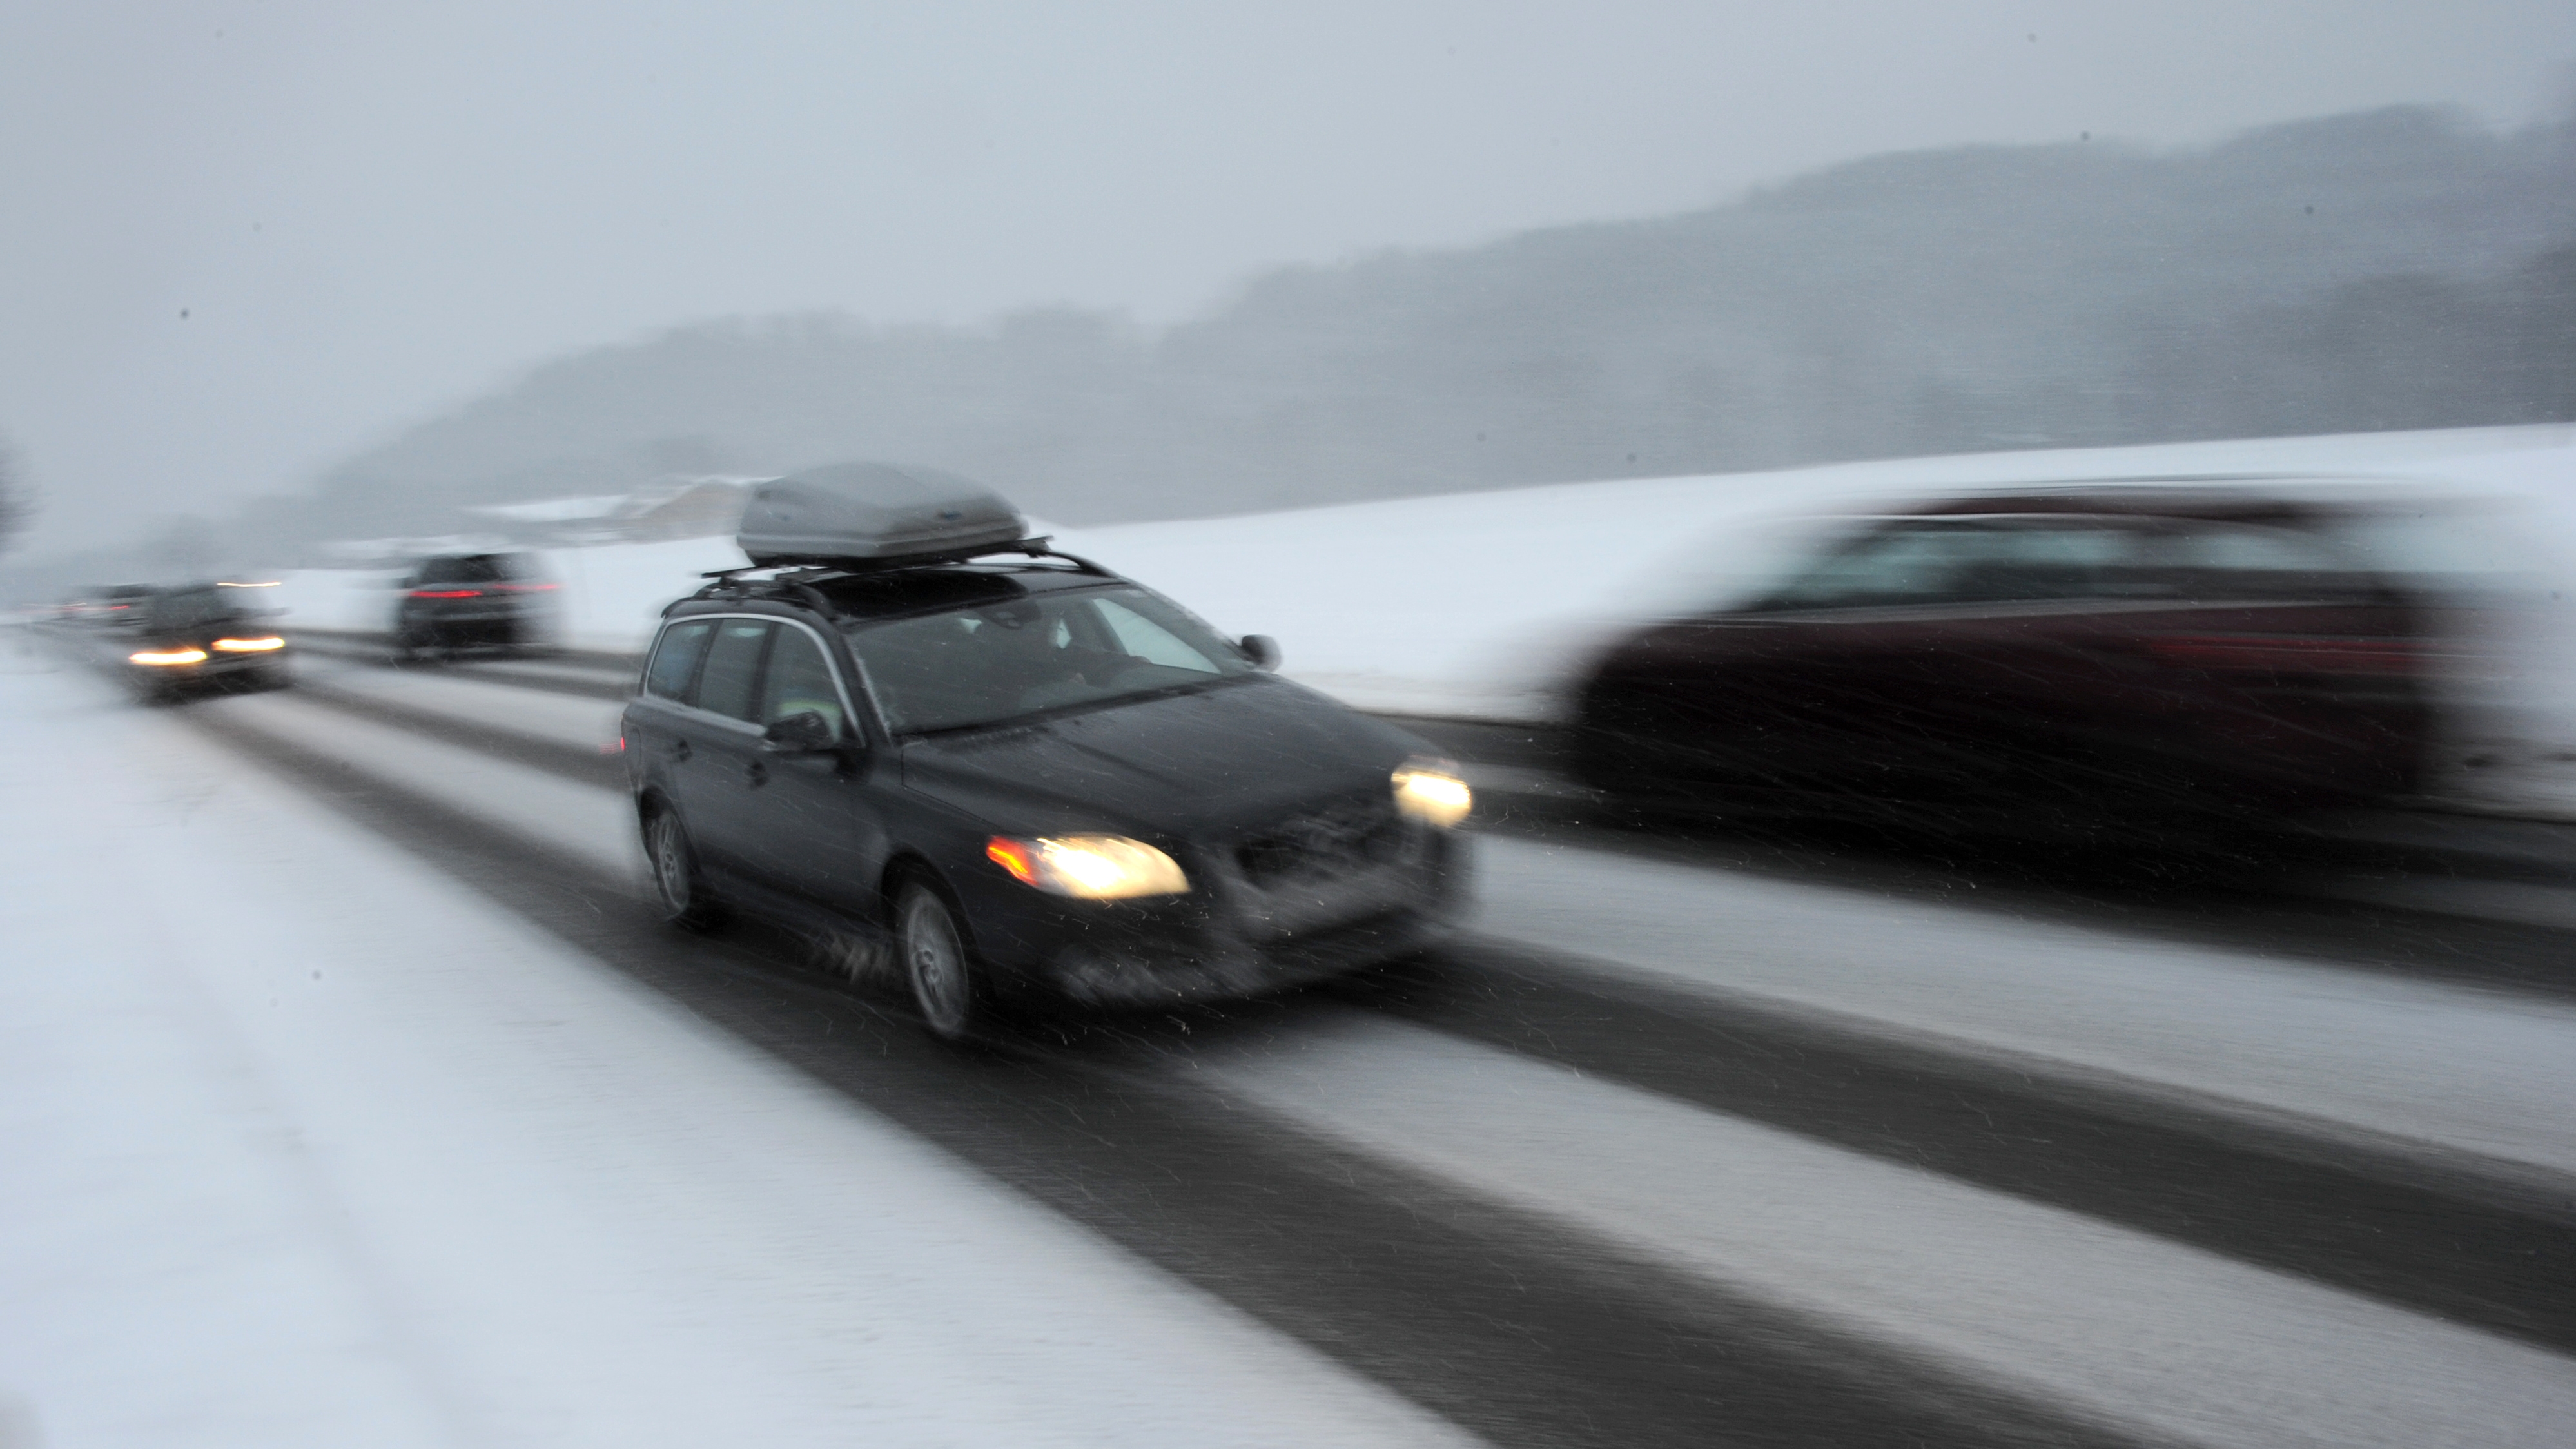 Winterurlaub mit Auto: Richtig packen und den Wagen kältefit machen